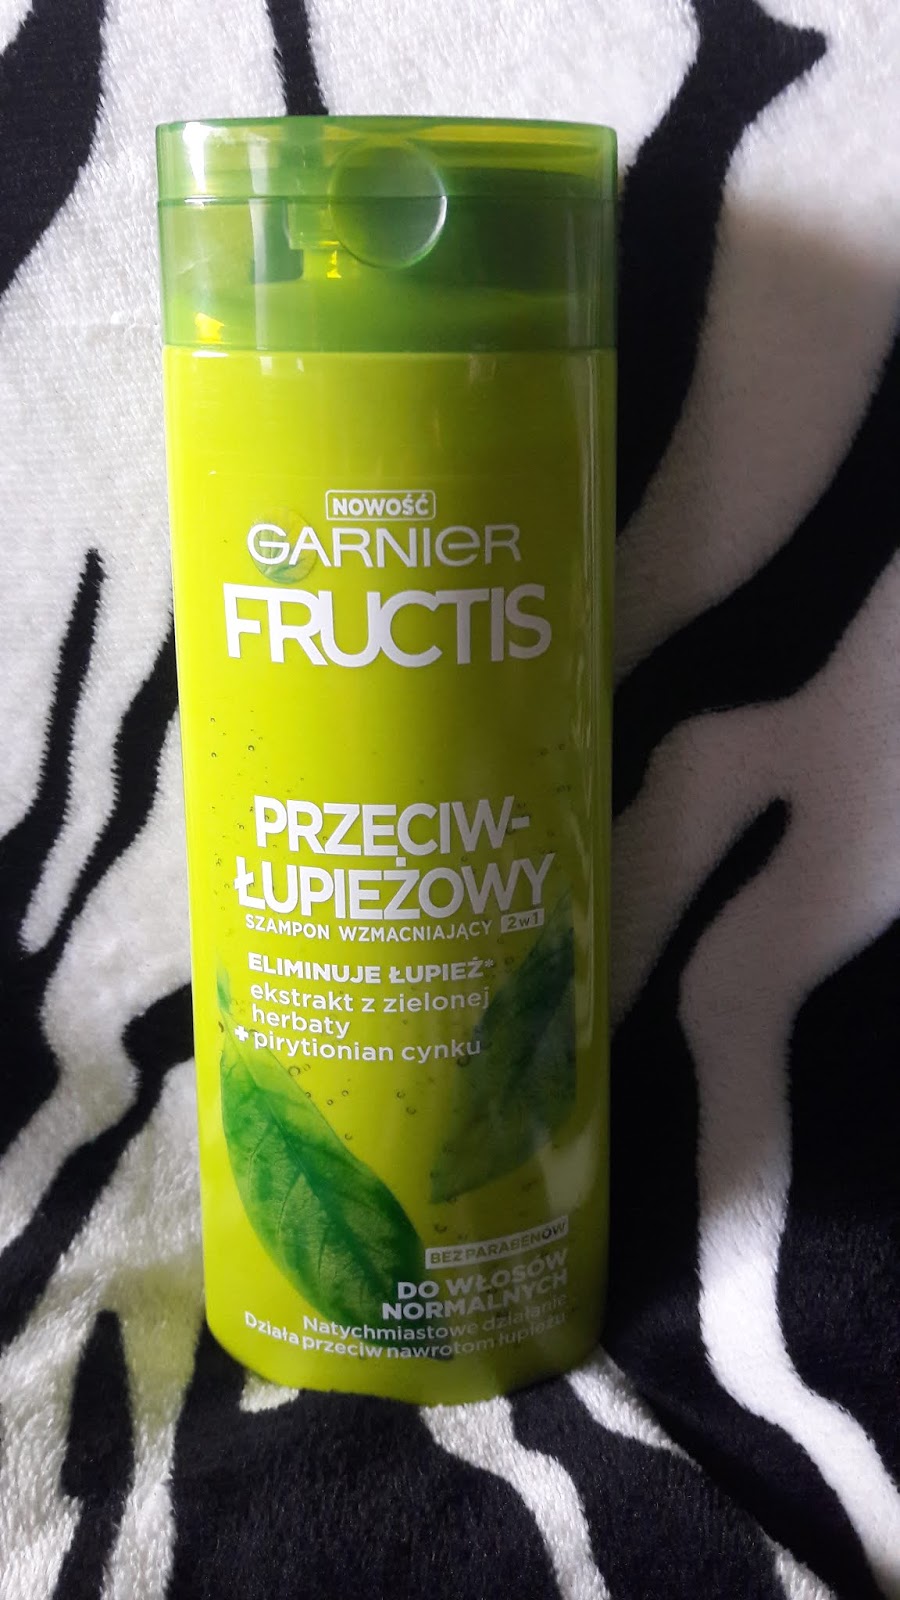 Garnier fructis szampon przeciwłupieżowy wzmacniający 2 w 1